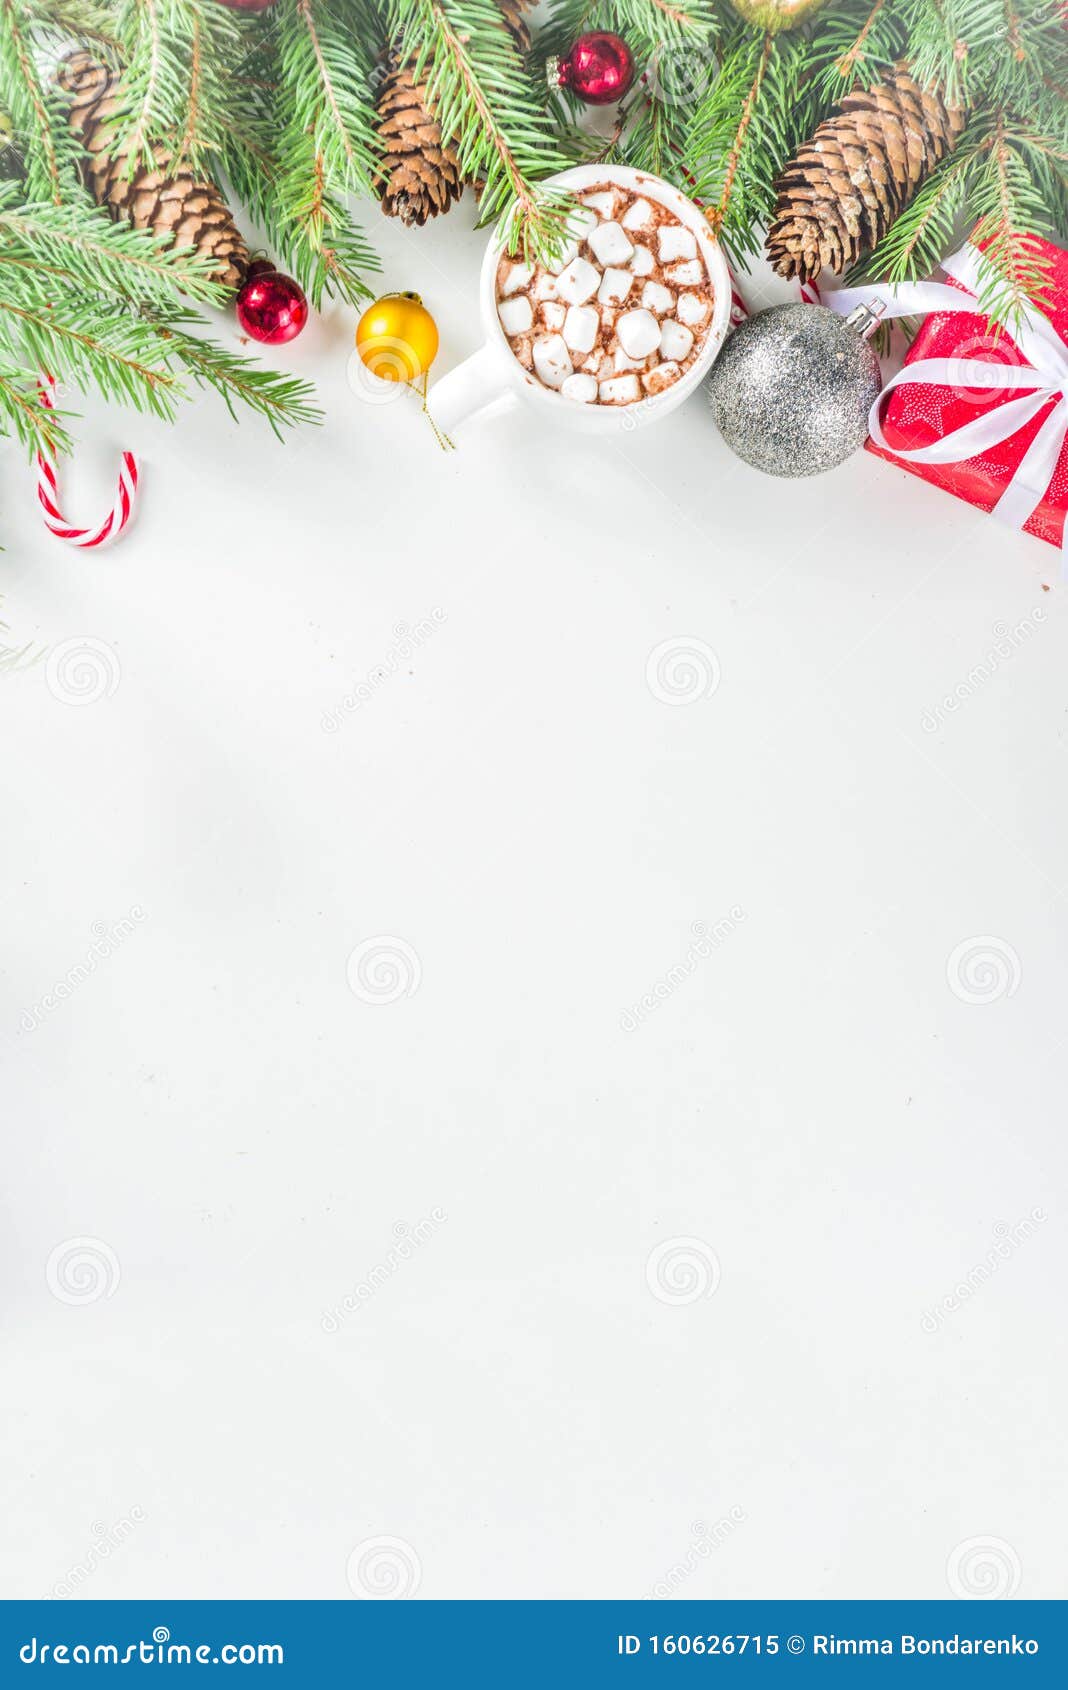 La Decoración De Navidad Sobre Fondo De Madera Para Las Felicitaciones  Fotos Retratos Imágenes Y Fotografía De Archivo Libres De Derecho Image  46176914